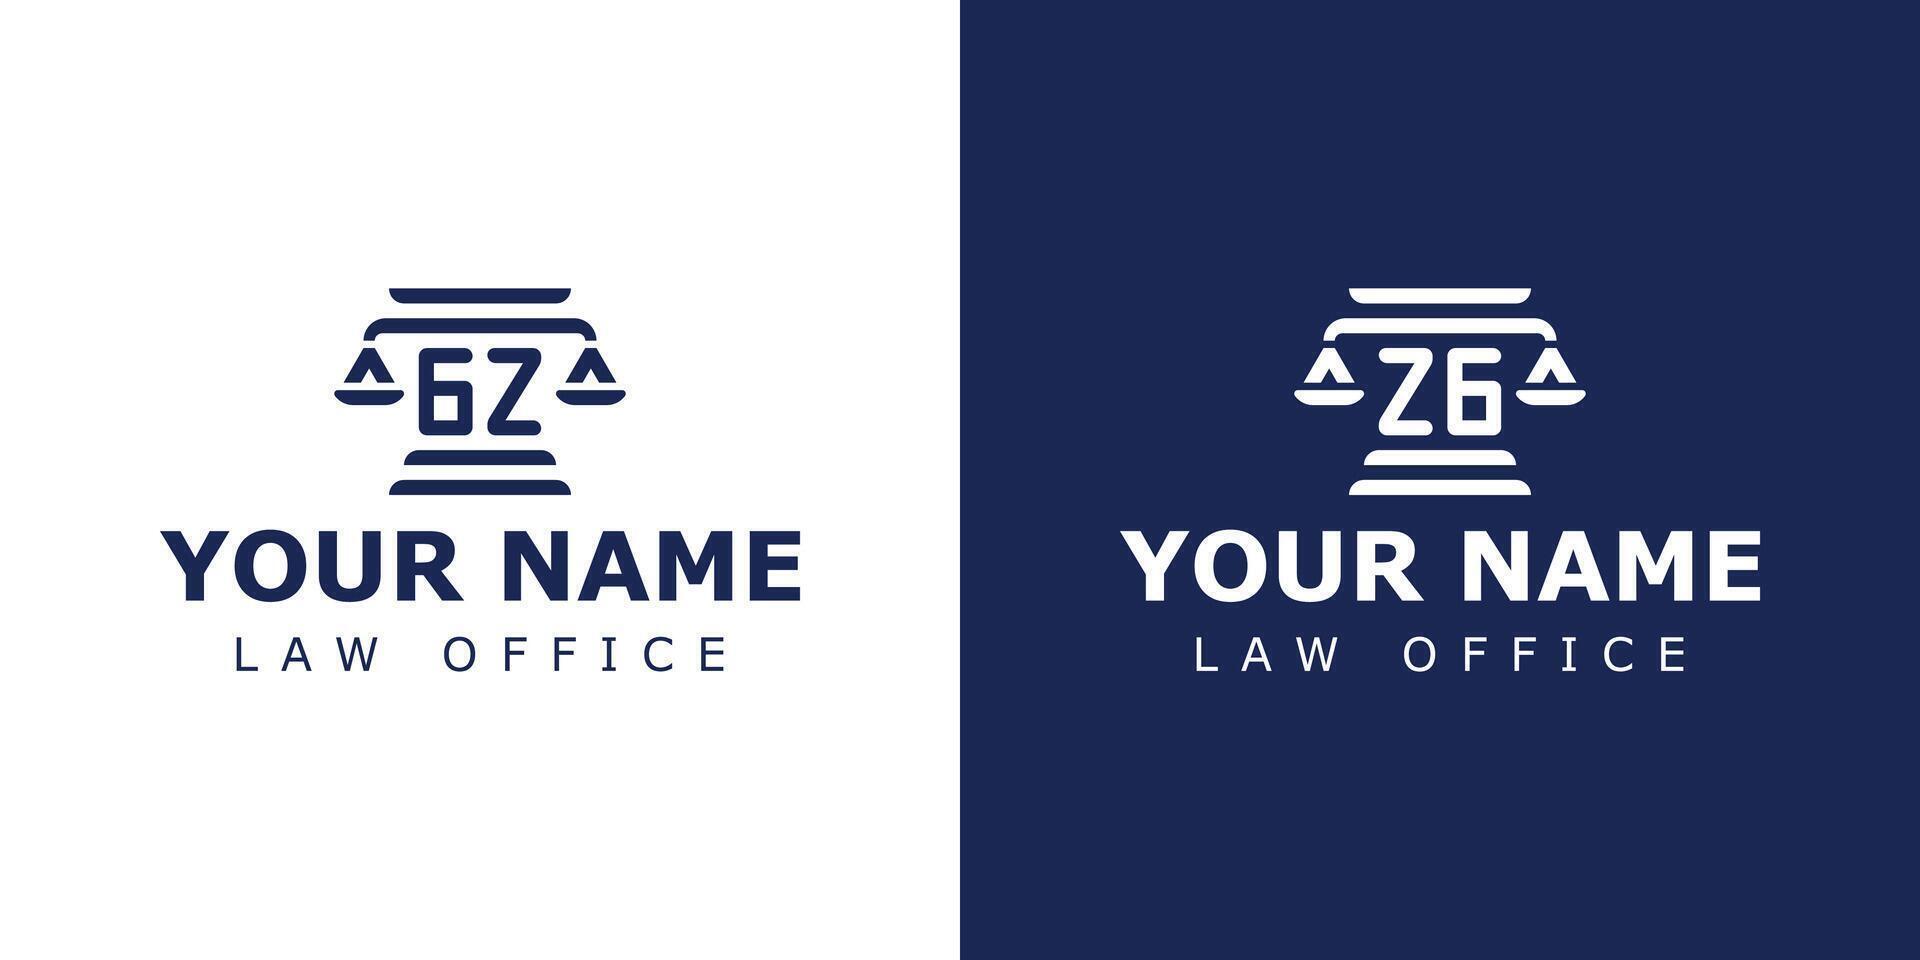 Briefe gz und zg legal Logo, geeignet zum Rechtsanwalt, legal, oder Gerechtigkeit mit gz oder zg Initialen vektor